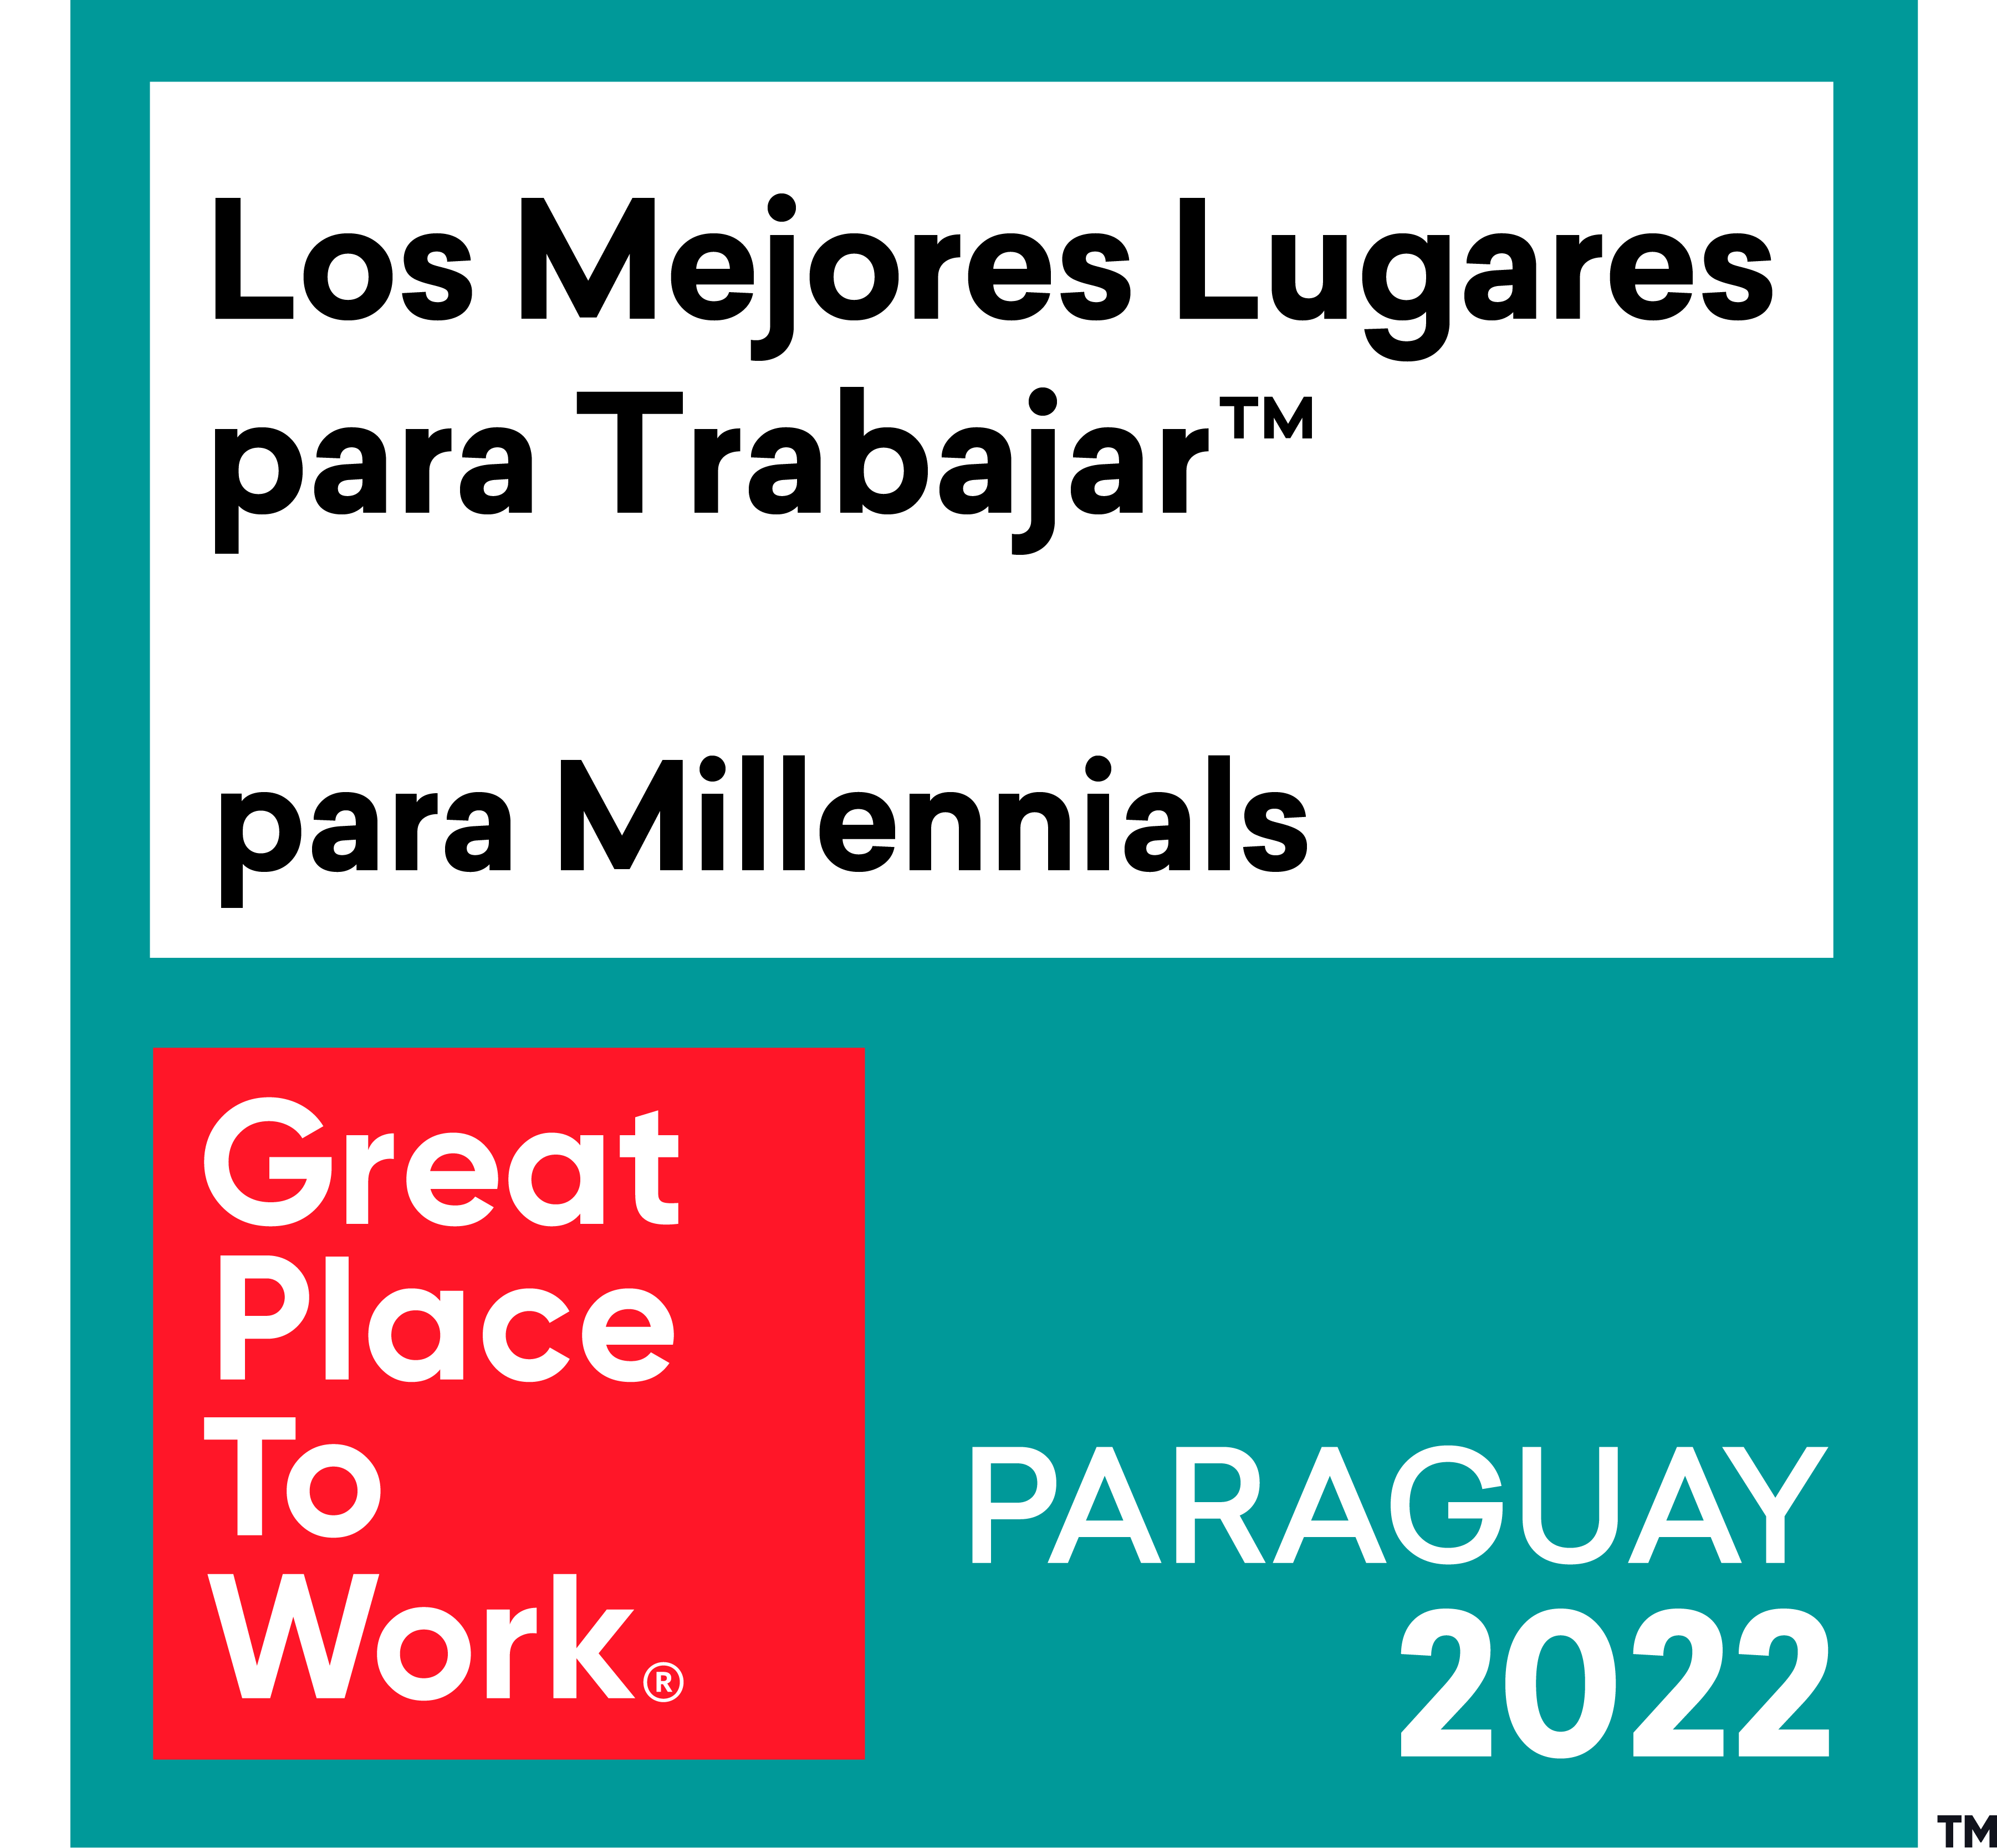 2022_PARAGUAY_los_mejores_lugares_para_trabaljar_para_millennials-1